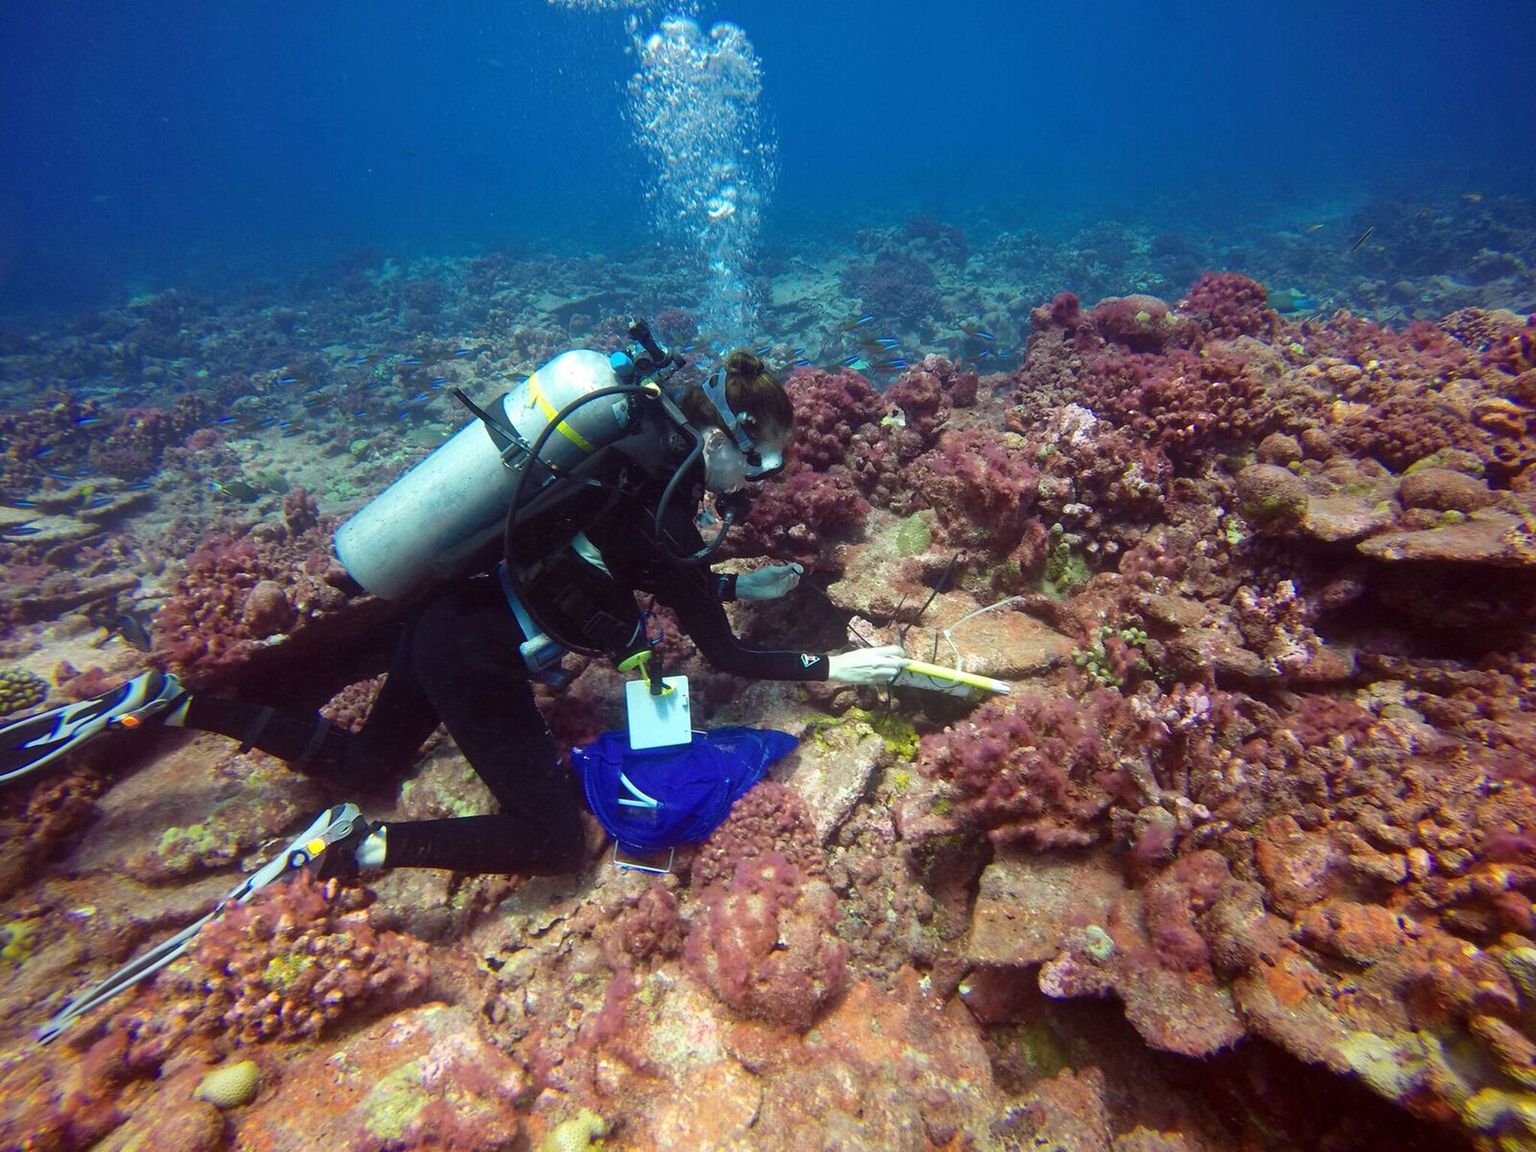 Georgia Ülikooli kliimateadlane Kim Cobb korallrahudelt proove võtmas. Tulemused näitavad ootamatult, et Kiritimati saare rahud on hakanud pärast pea täielikku väljasuremist aegamööda taastuma. Pildil on kollased korallid terved ja valged haiged.